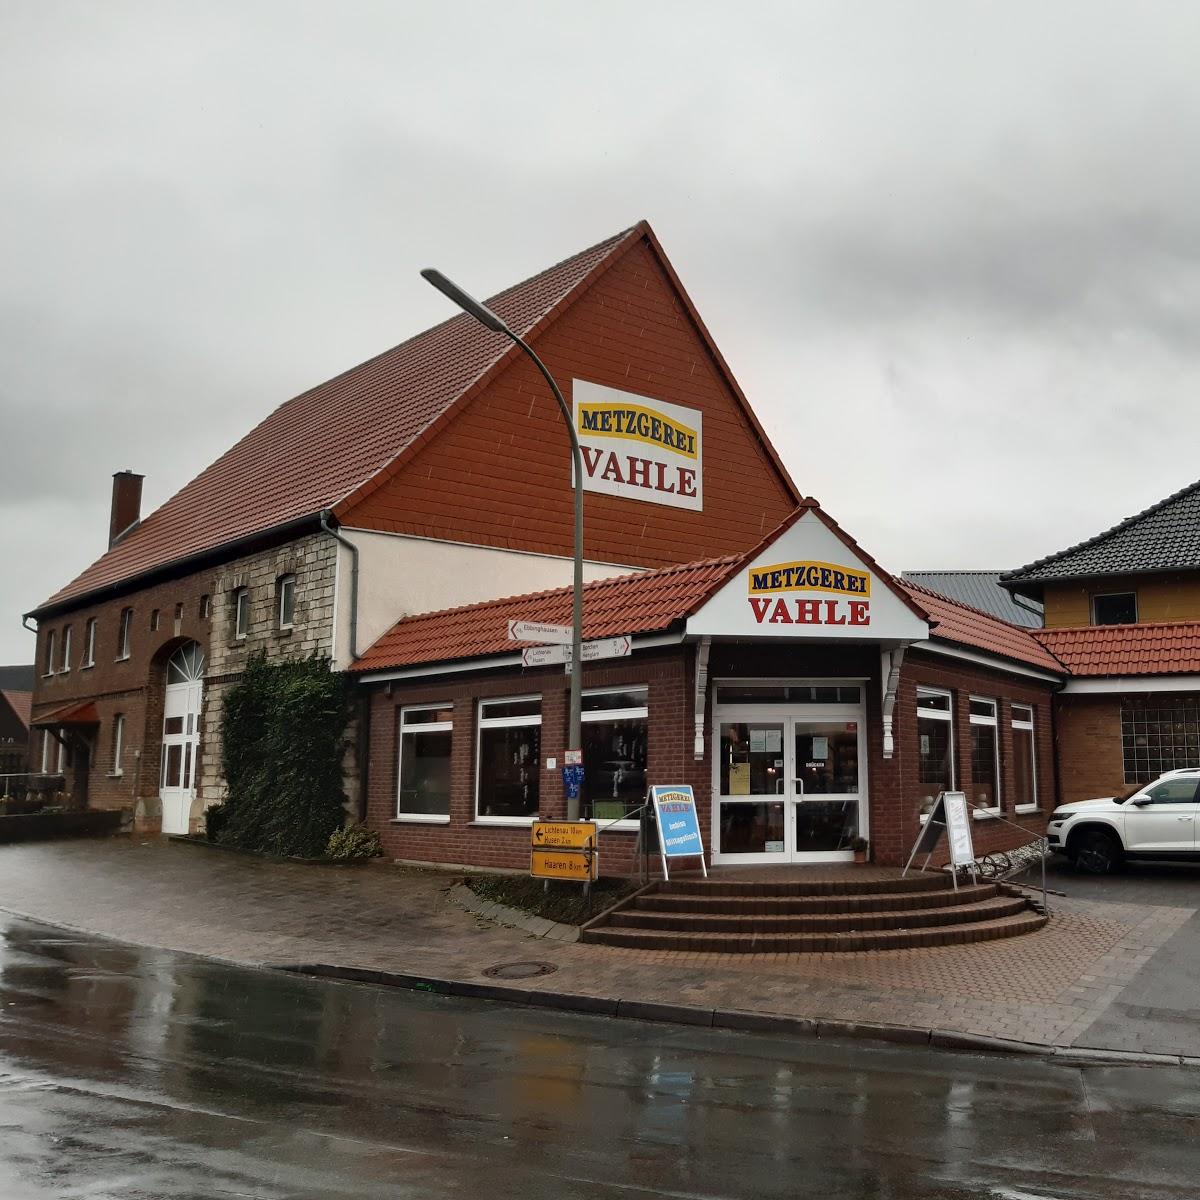 Restaurant "Metzgerei und Imbiss Vahle" in  Lichtenau